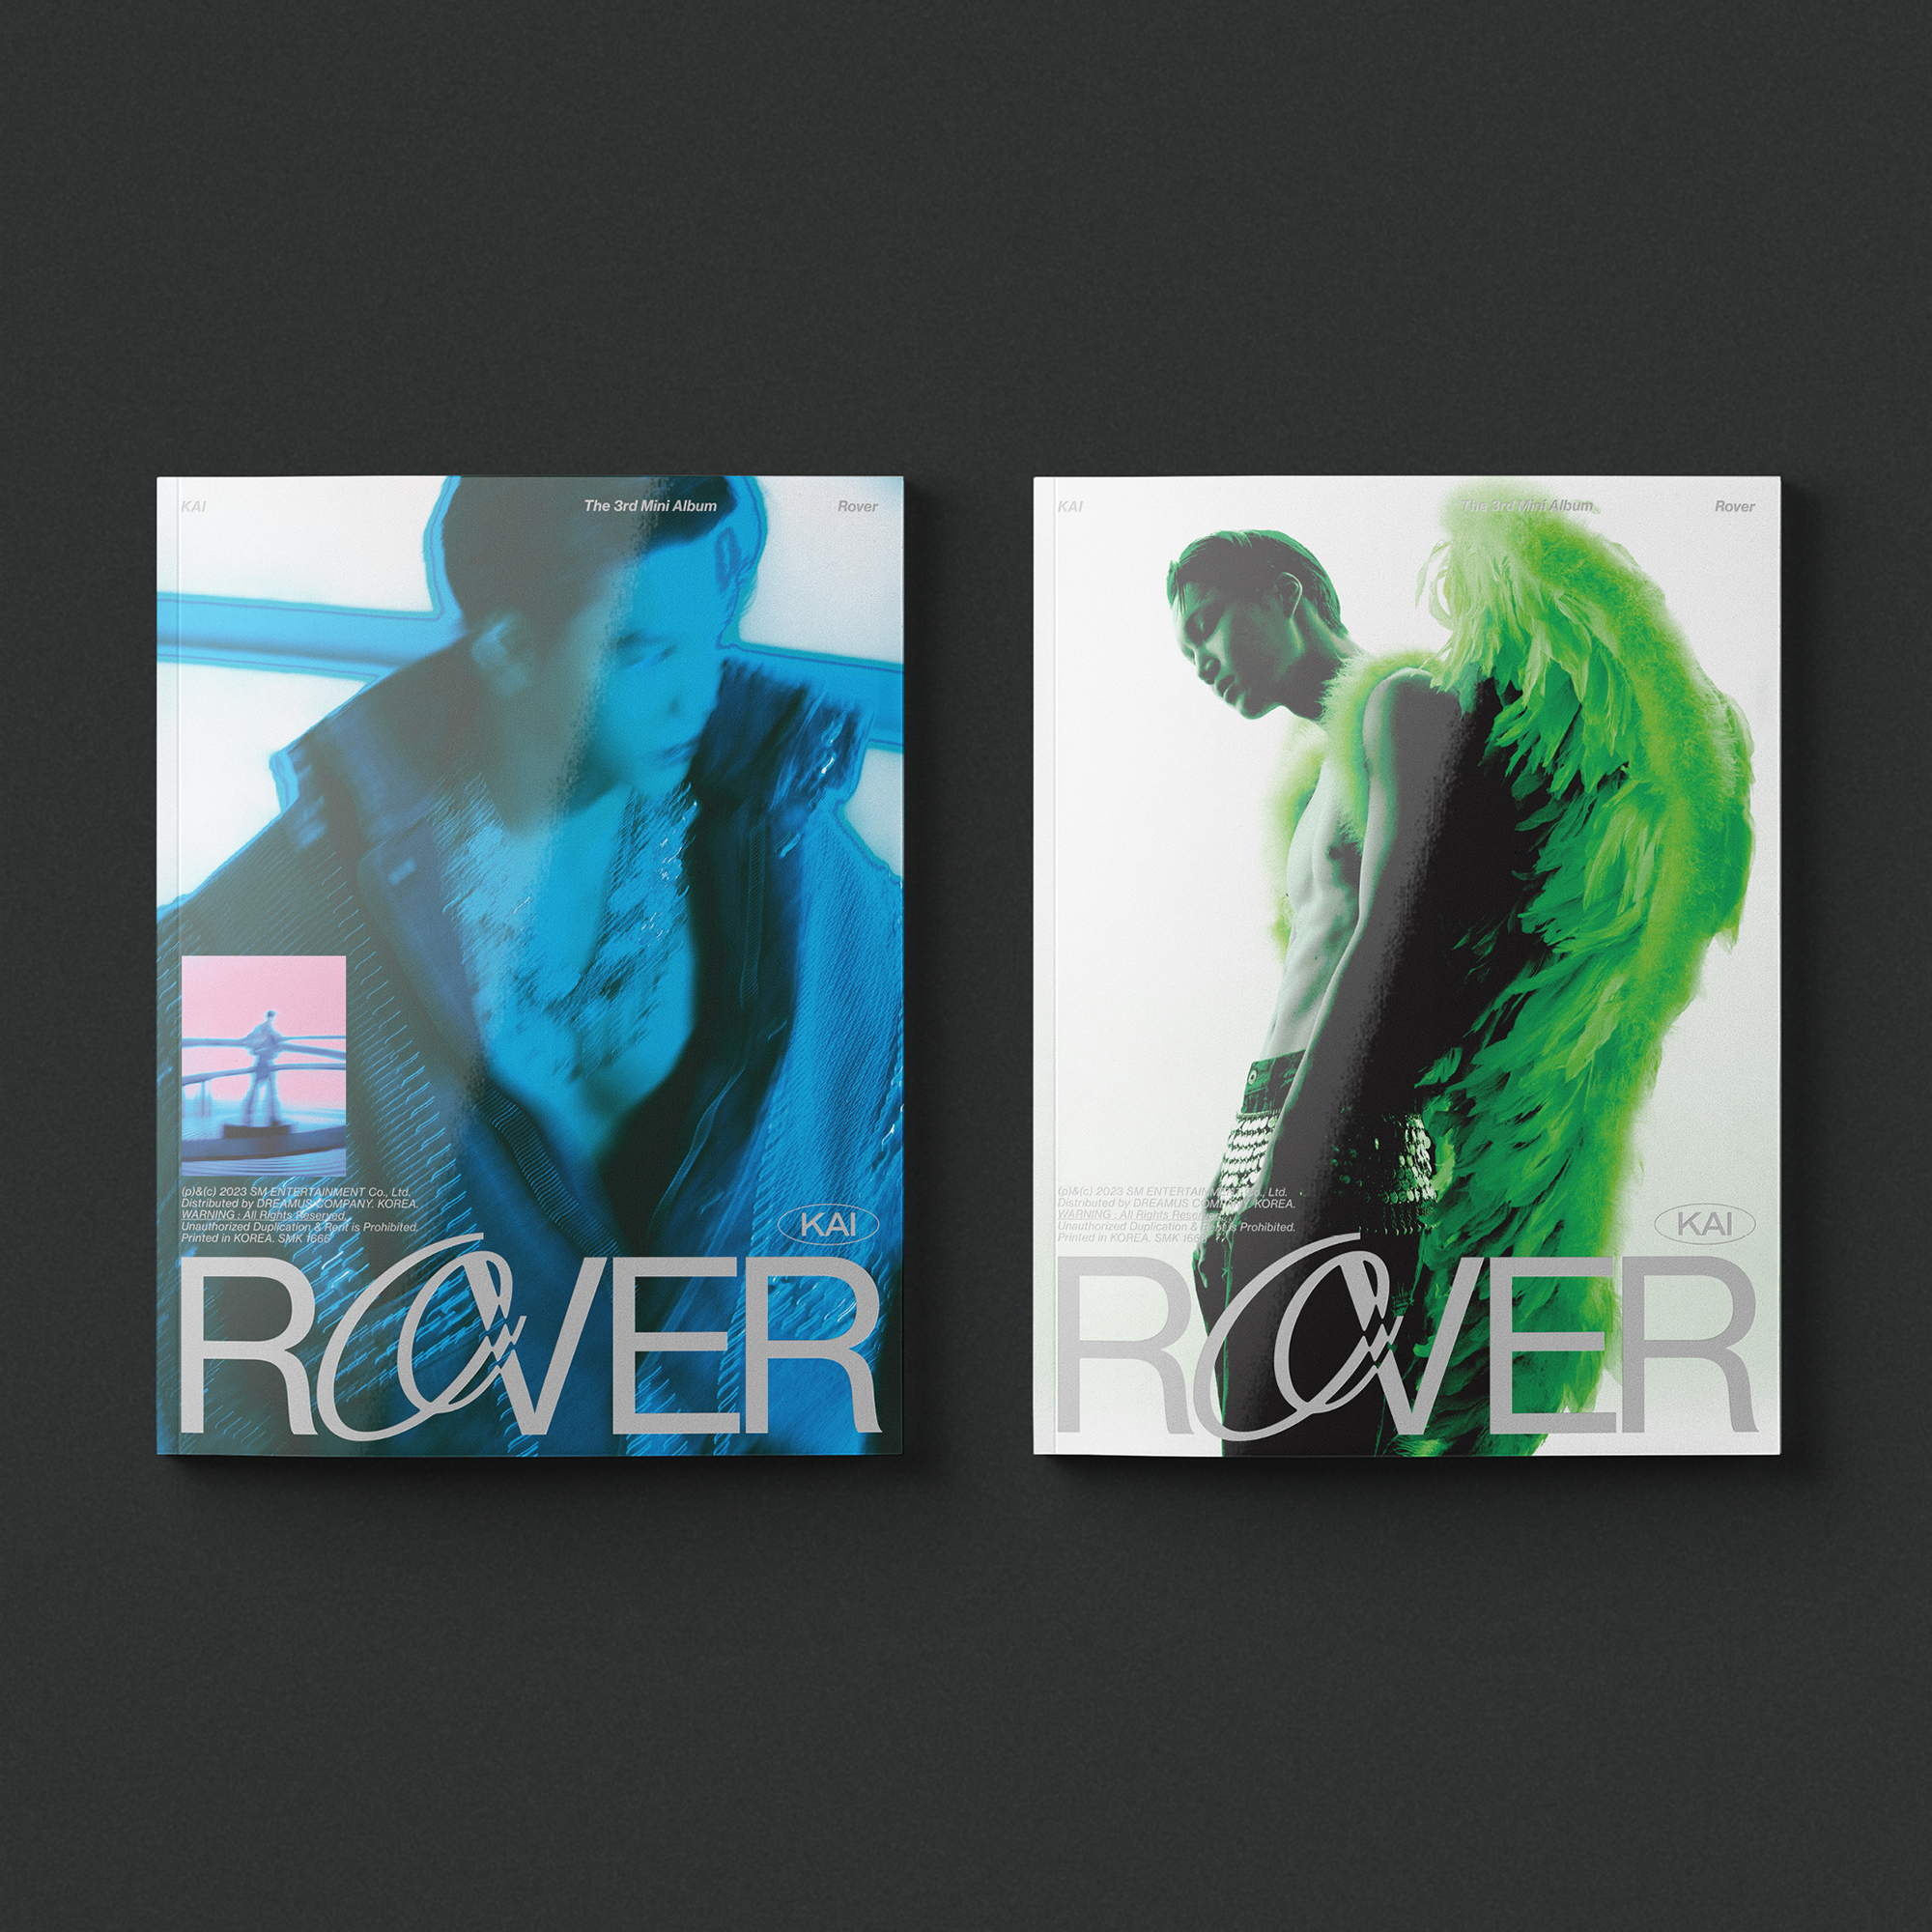 [@INTLKJI] KAI - The 3rd Mini Album [Rover] (Photo Book Ver.1)